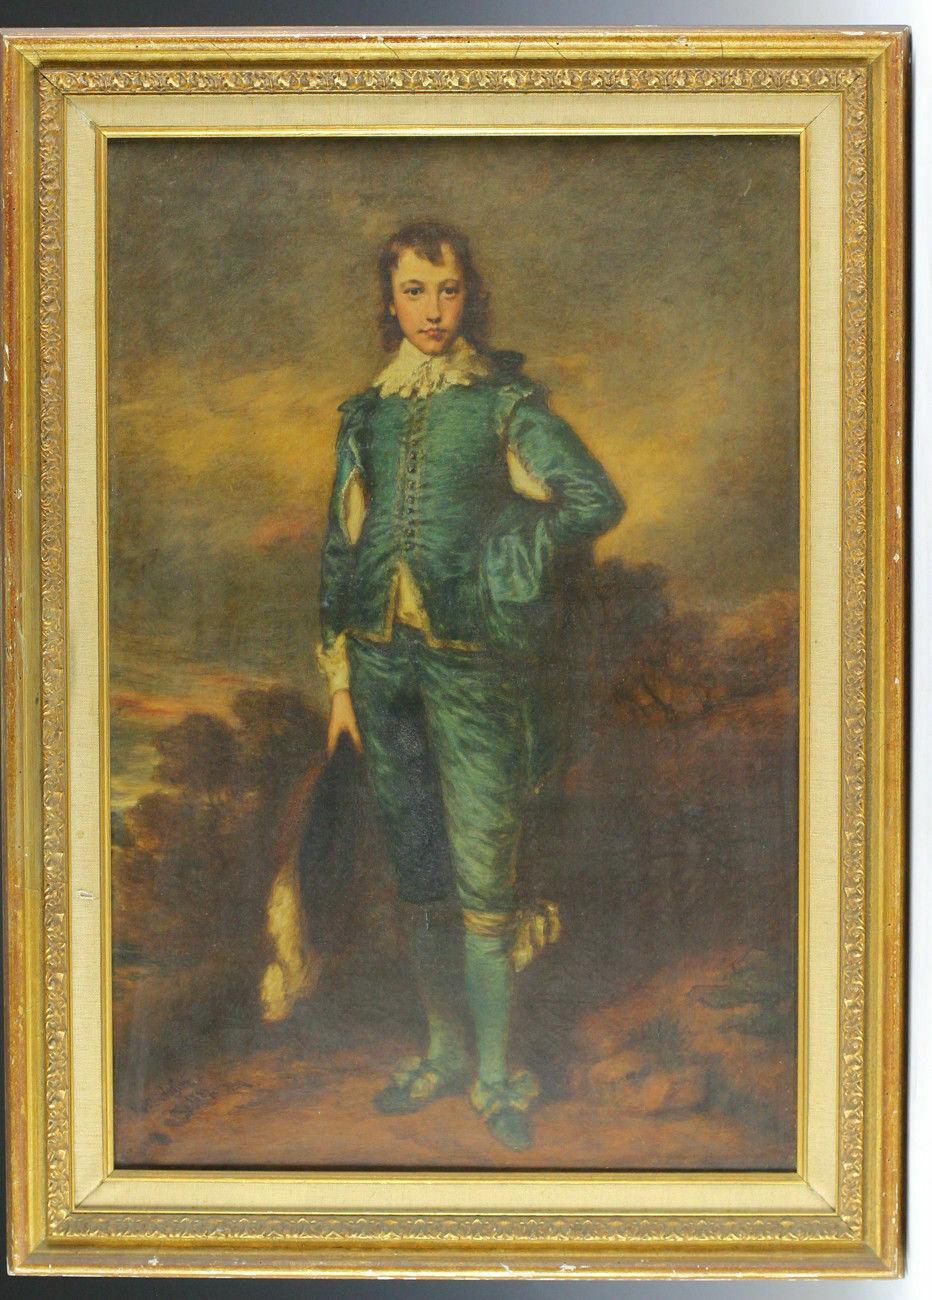 Crozier, Robert (britannique, 1815-1891), portrait à l'huile sur toile d'après 